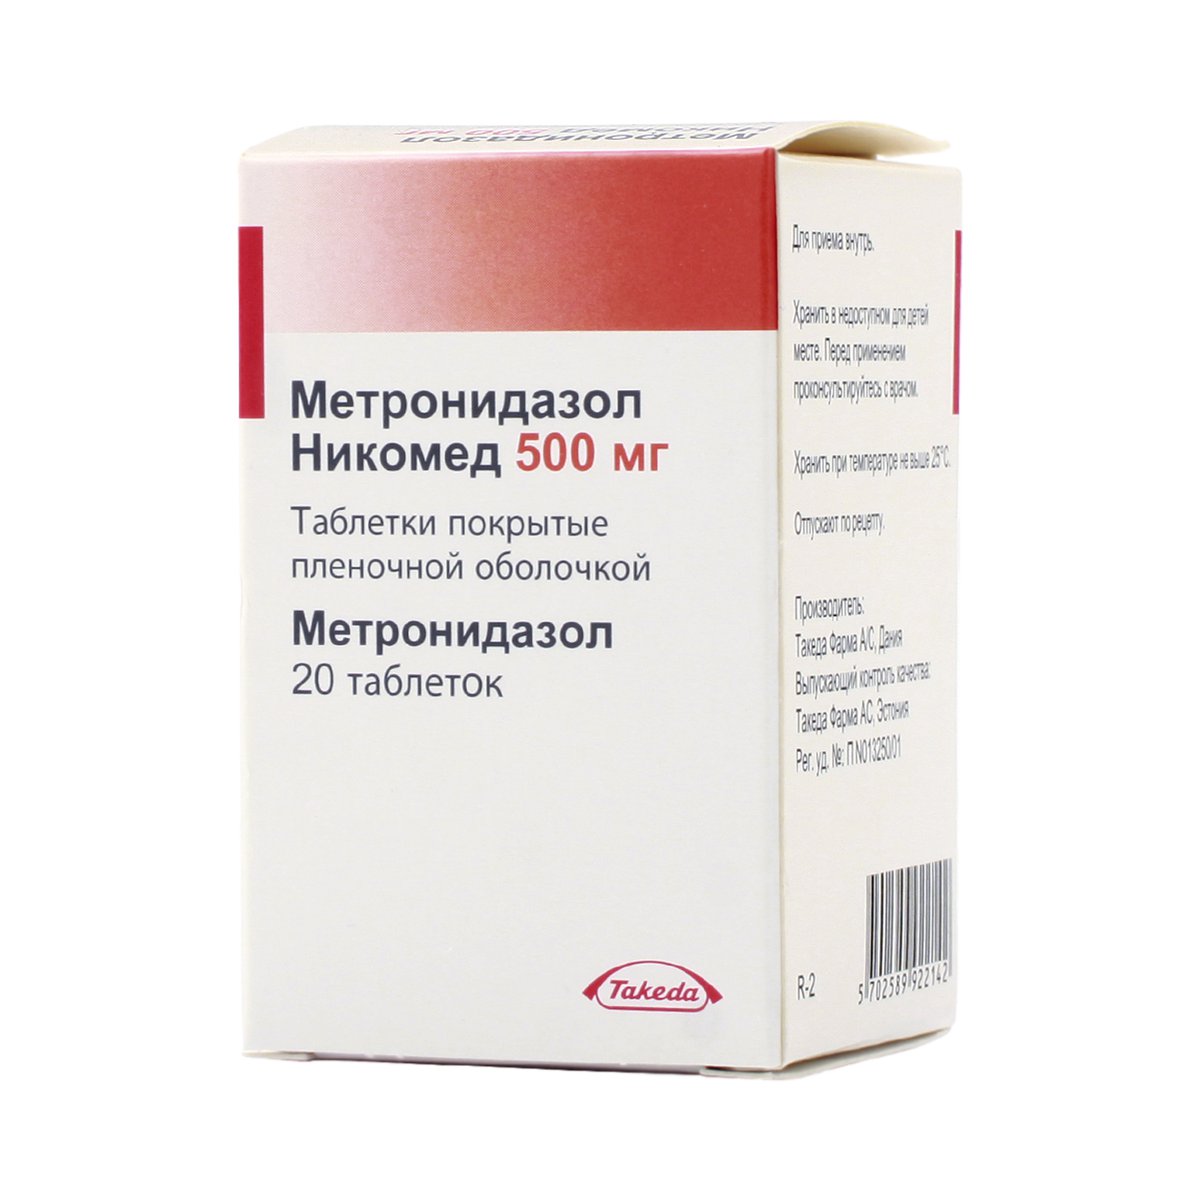 Метронидазол никомед (таблетки, 20 шт, 500 мг) - цена,  онлайн в .